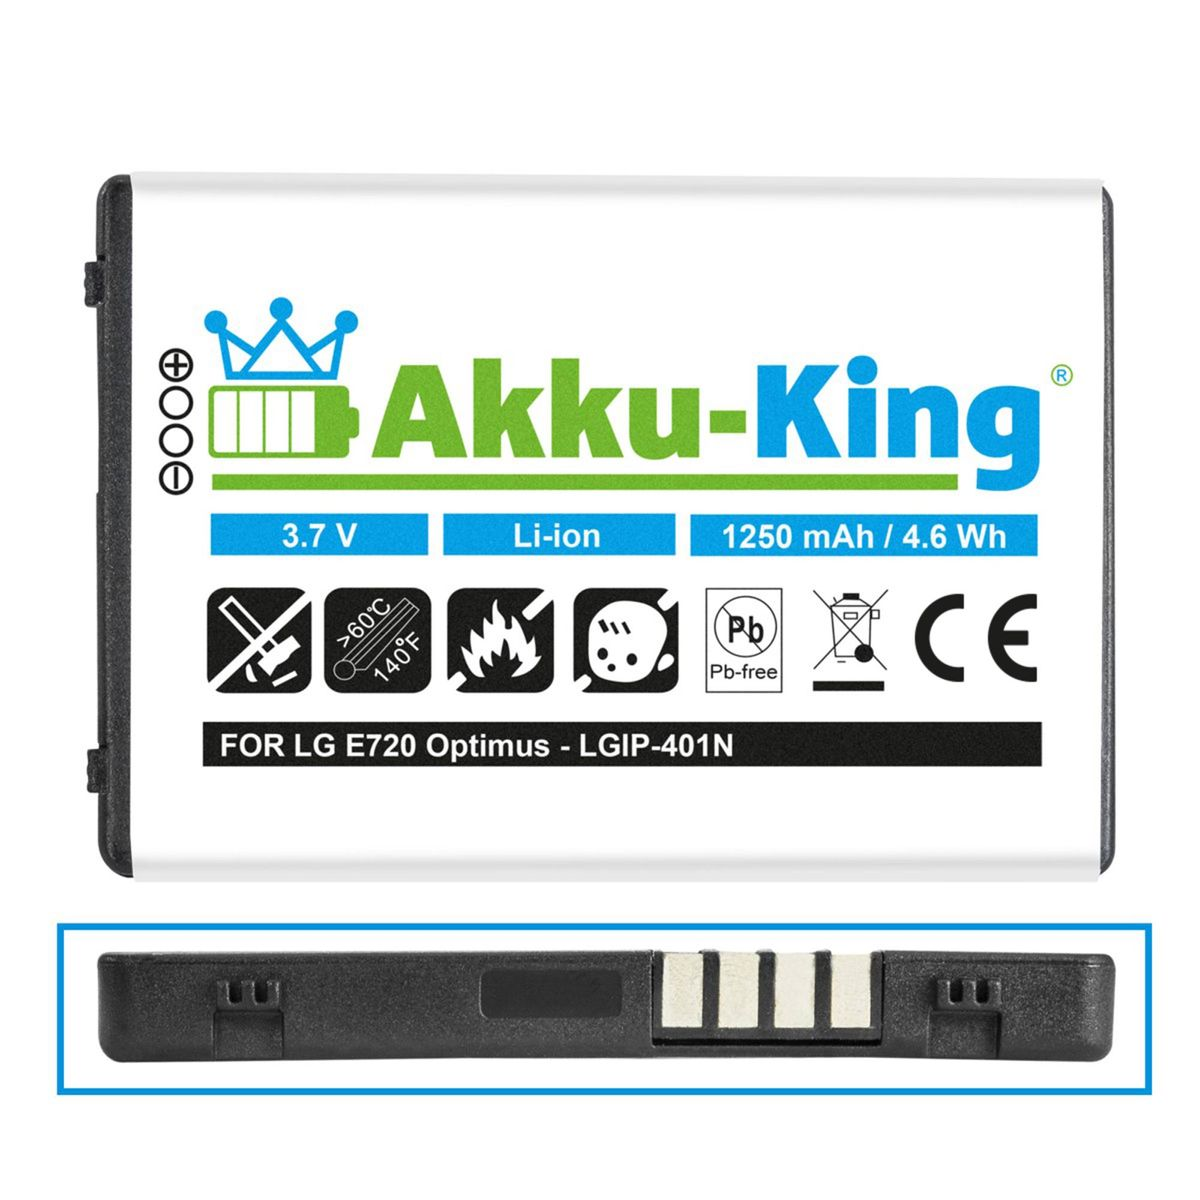 3.7 Volt, Akku mit LG Handy-Akku, AKKU-KING 1250mAh kompatibel LGIP-401N Li-Ion